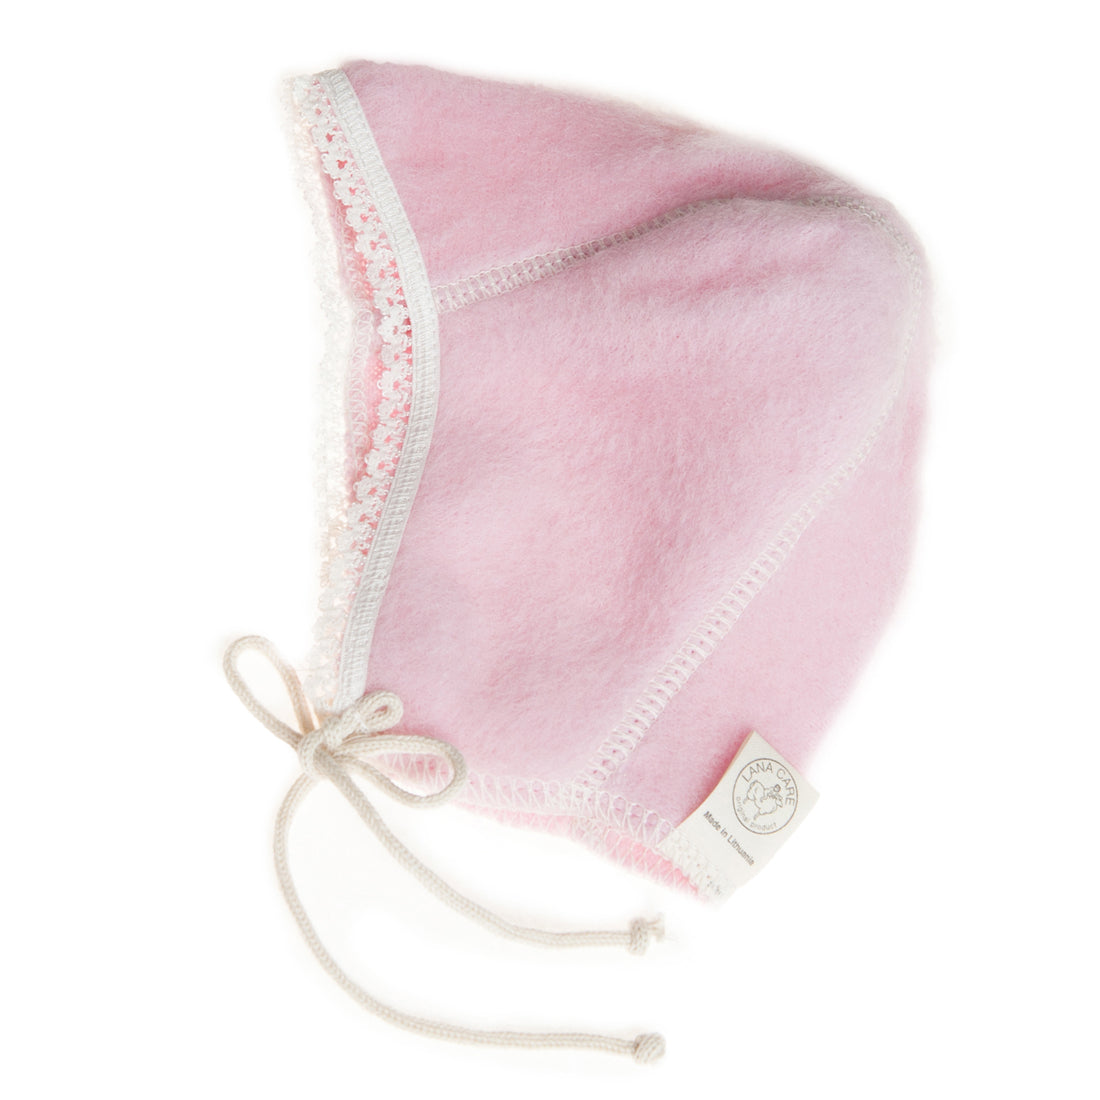 LANACare Baby Cap in Organic Merino Wool - SOFT PINK